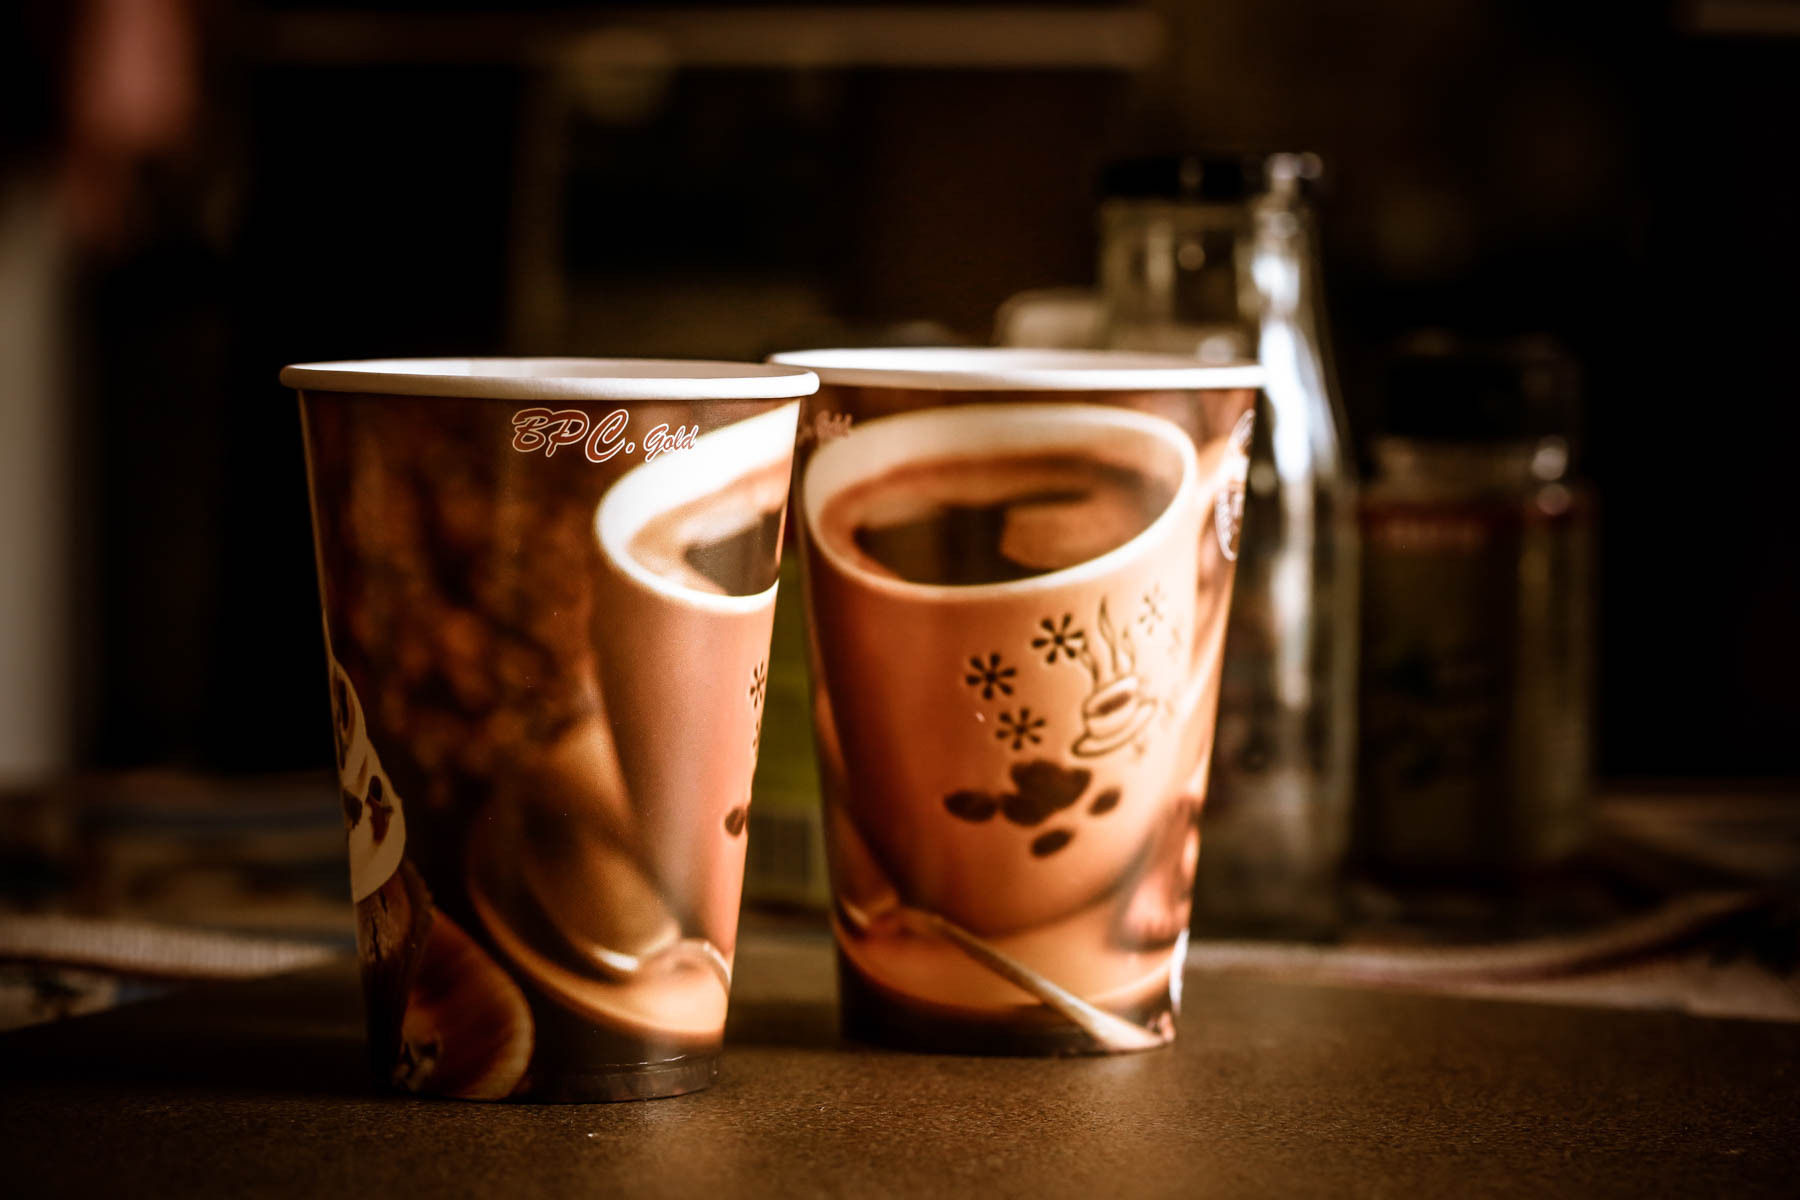 Paper cups juice cup..